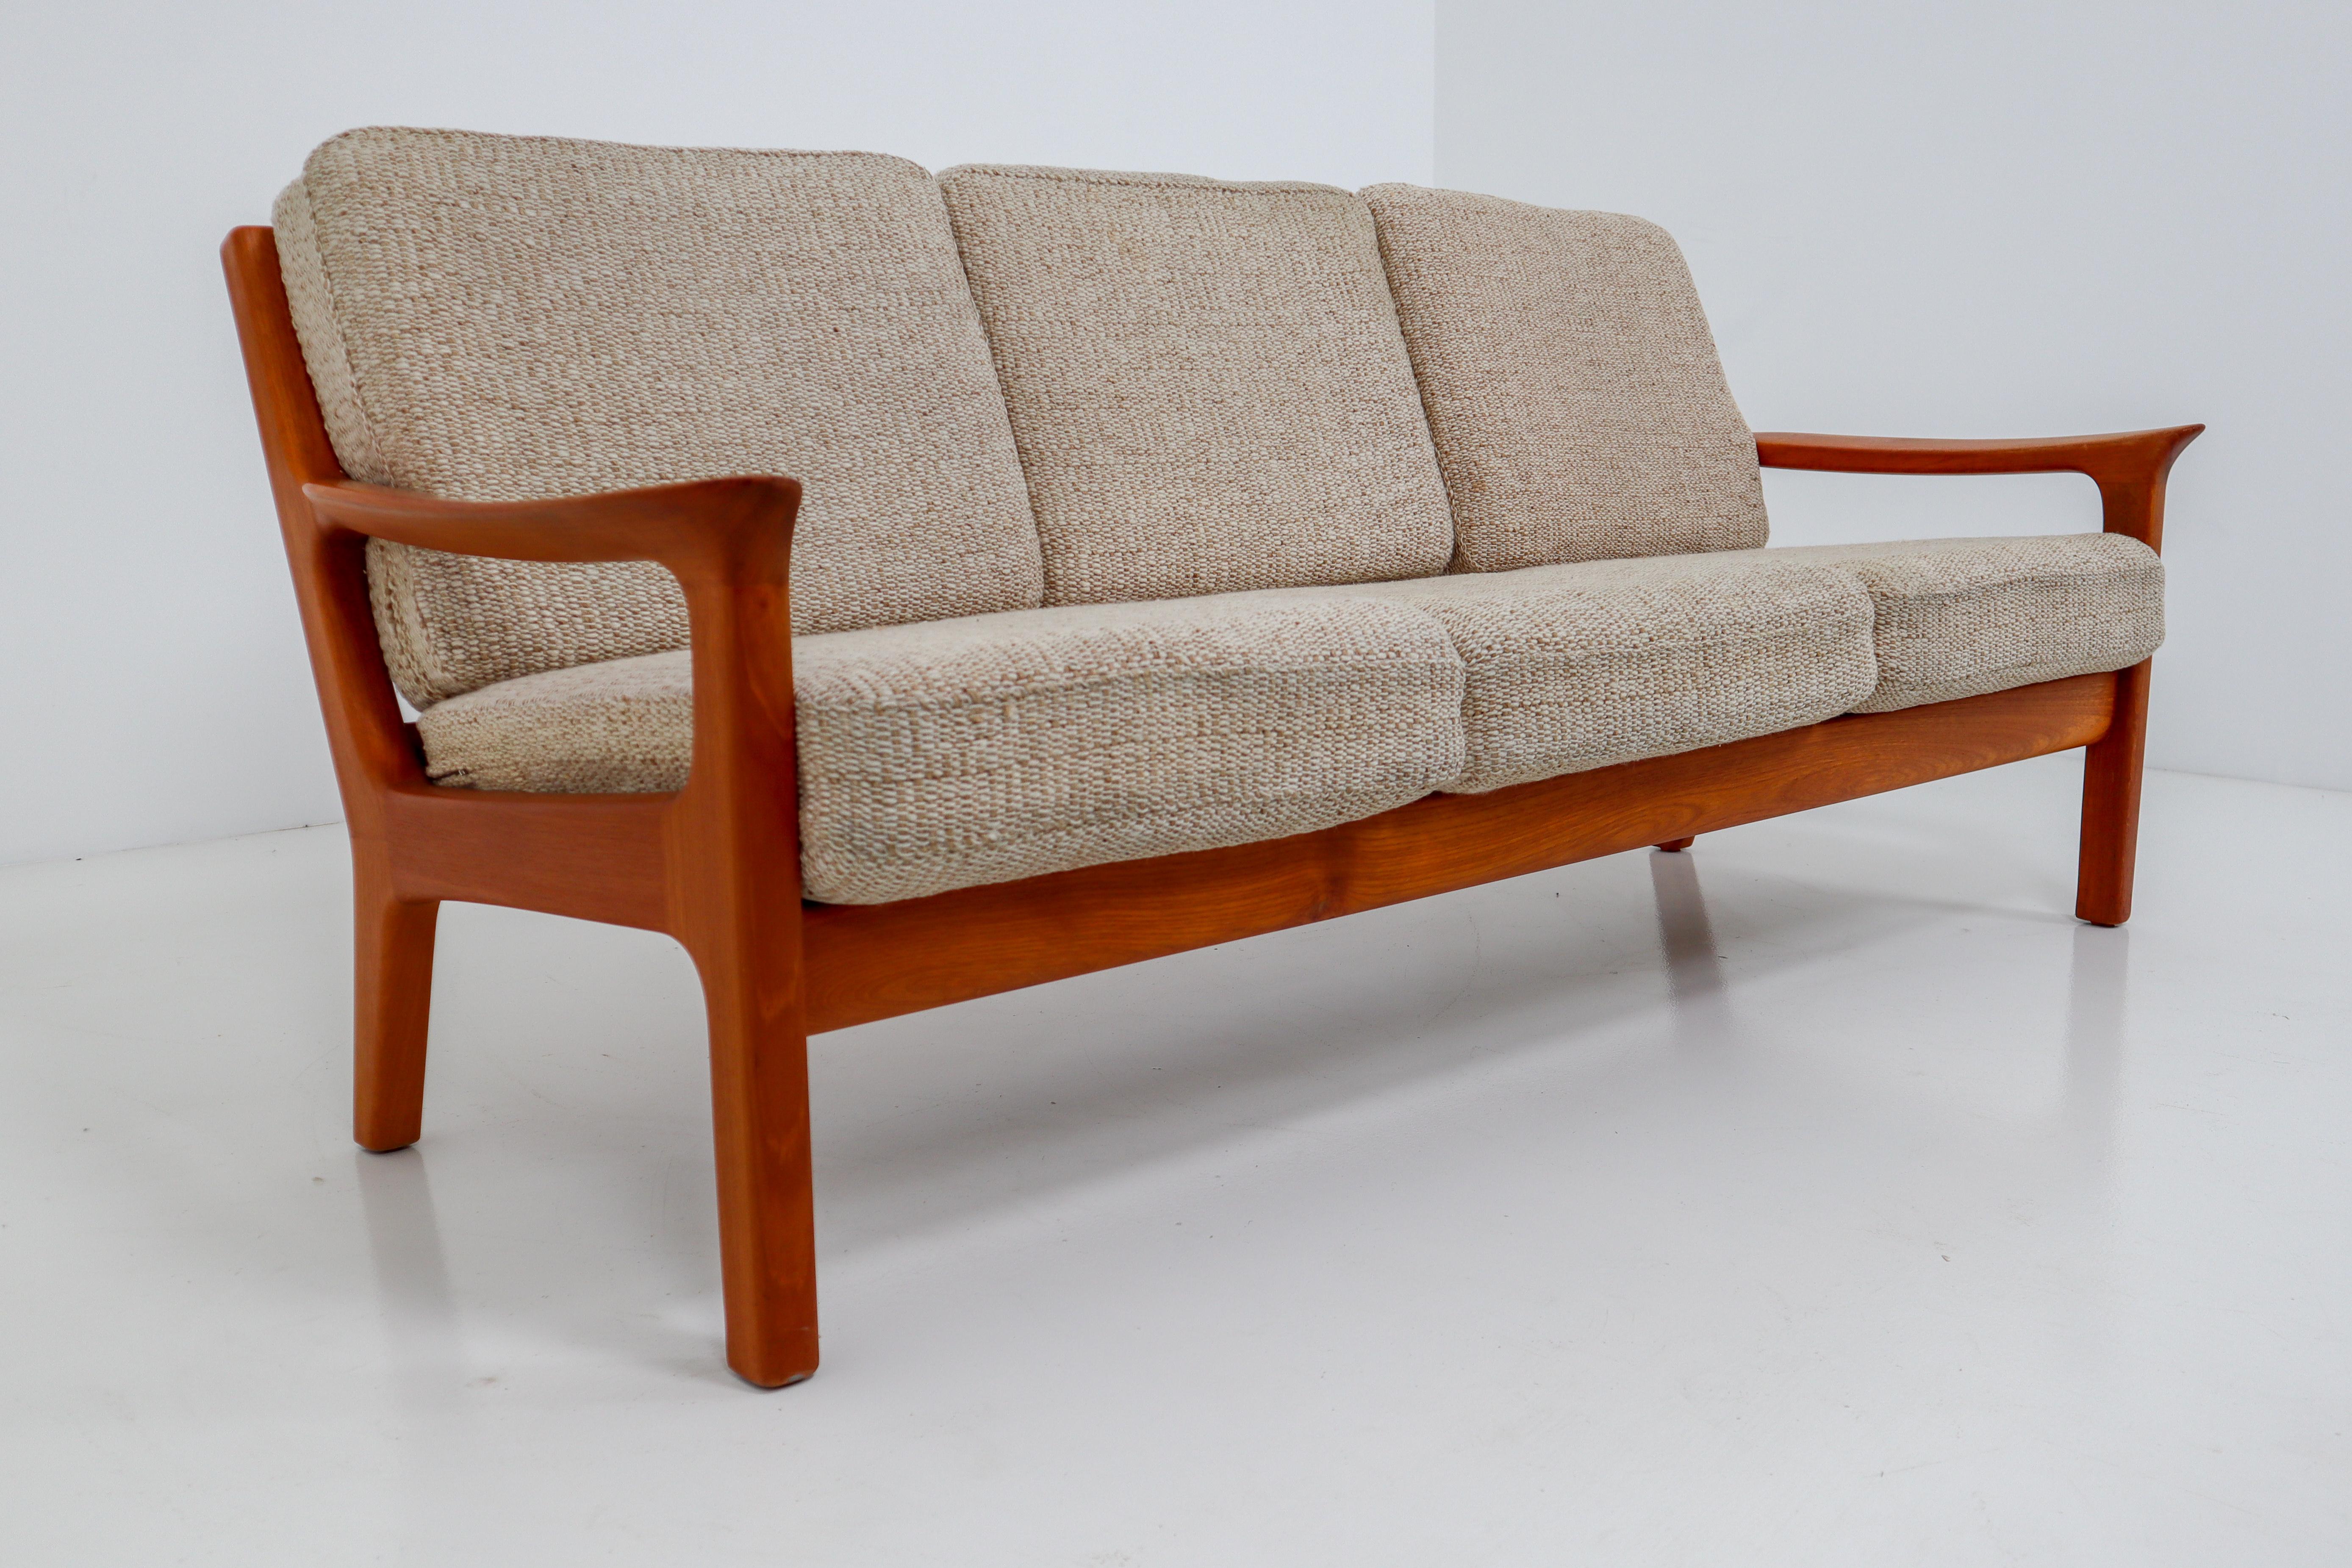 Scandinavian Modern Three-Seat Sofa in Teak by Juul Kristensen and Glostrup Furniture, 1960s